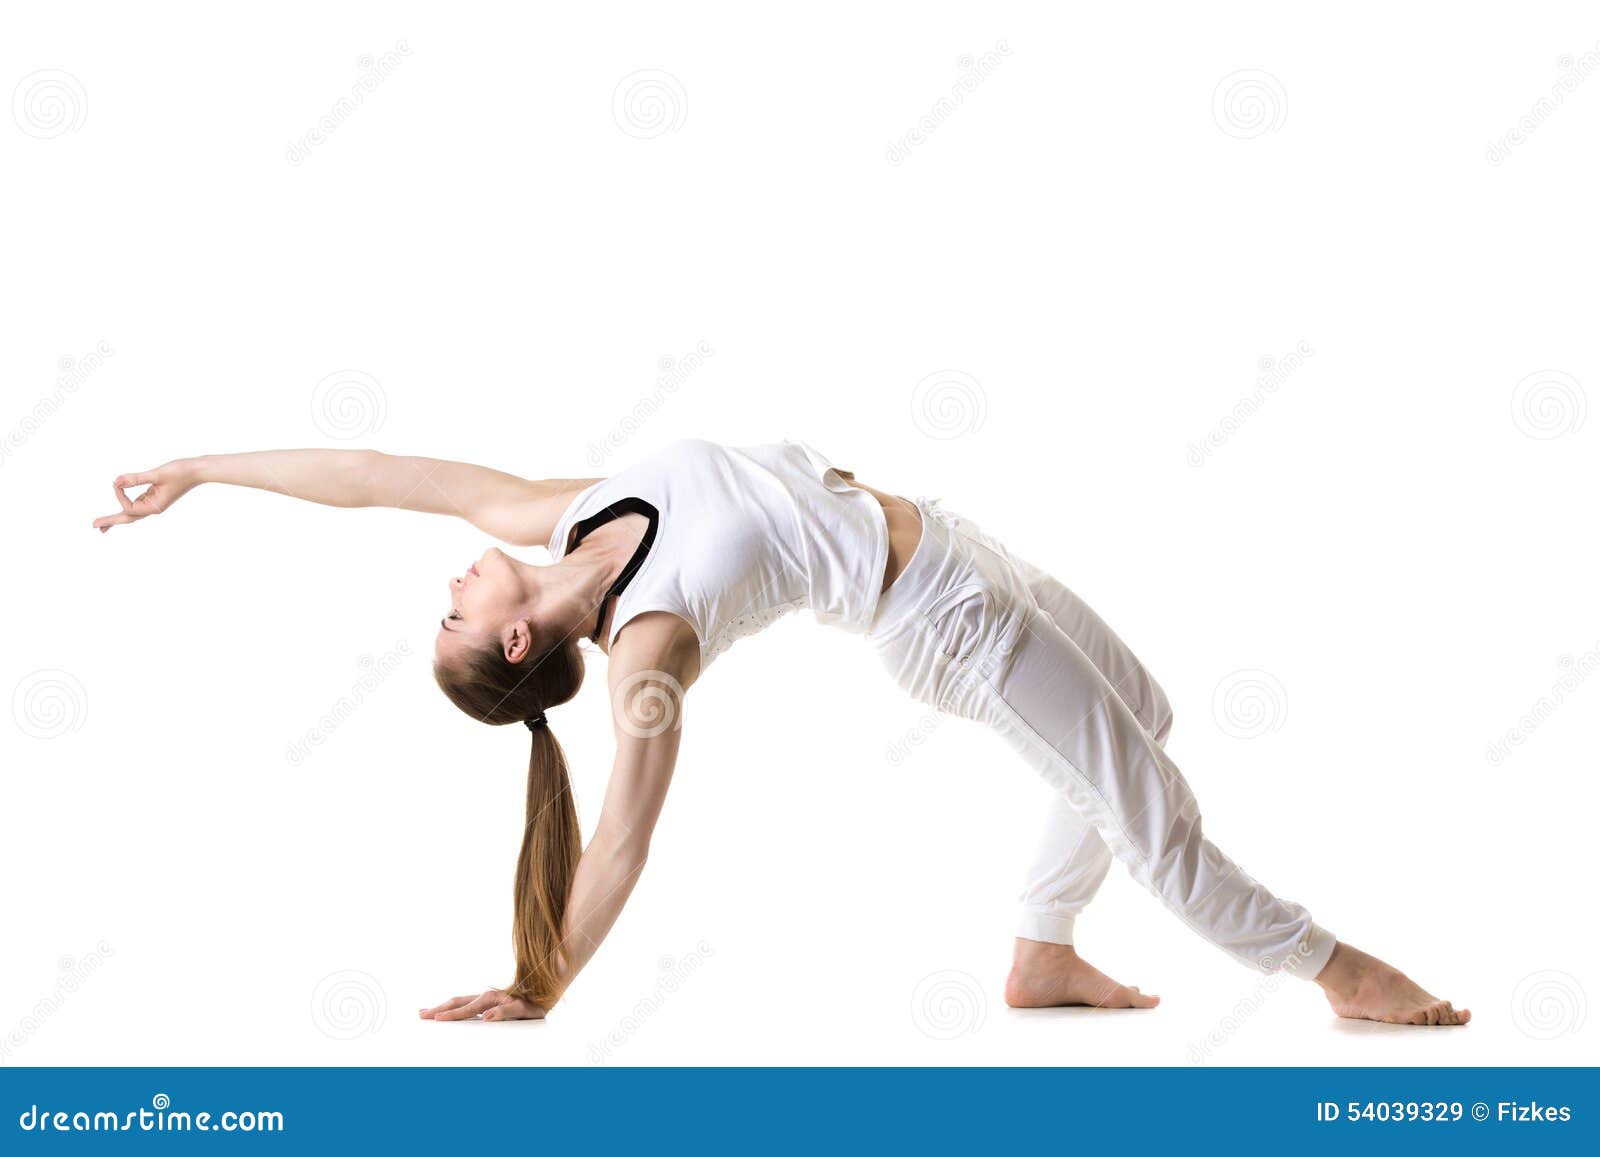 wild thing yoga pose